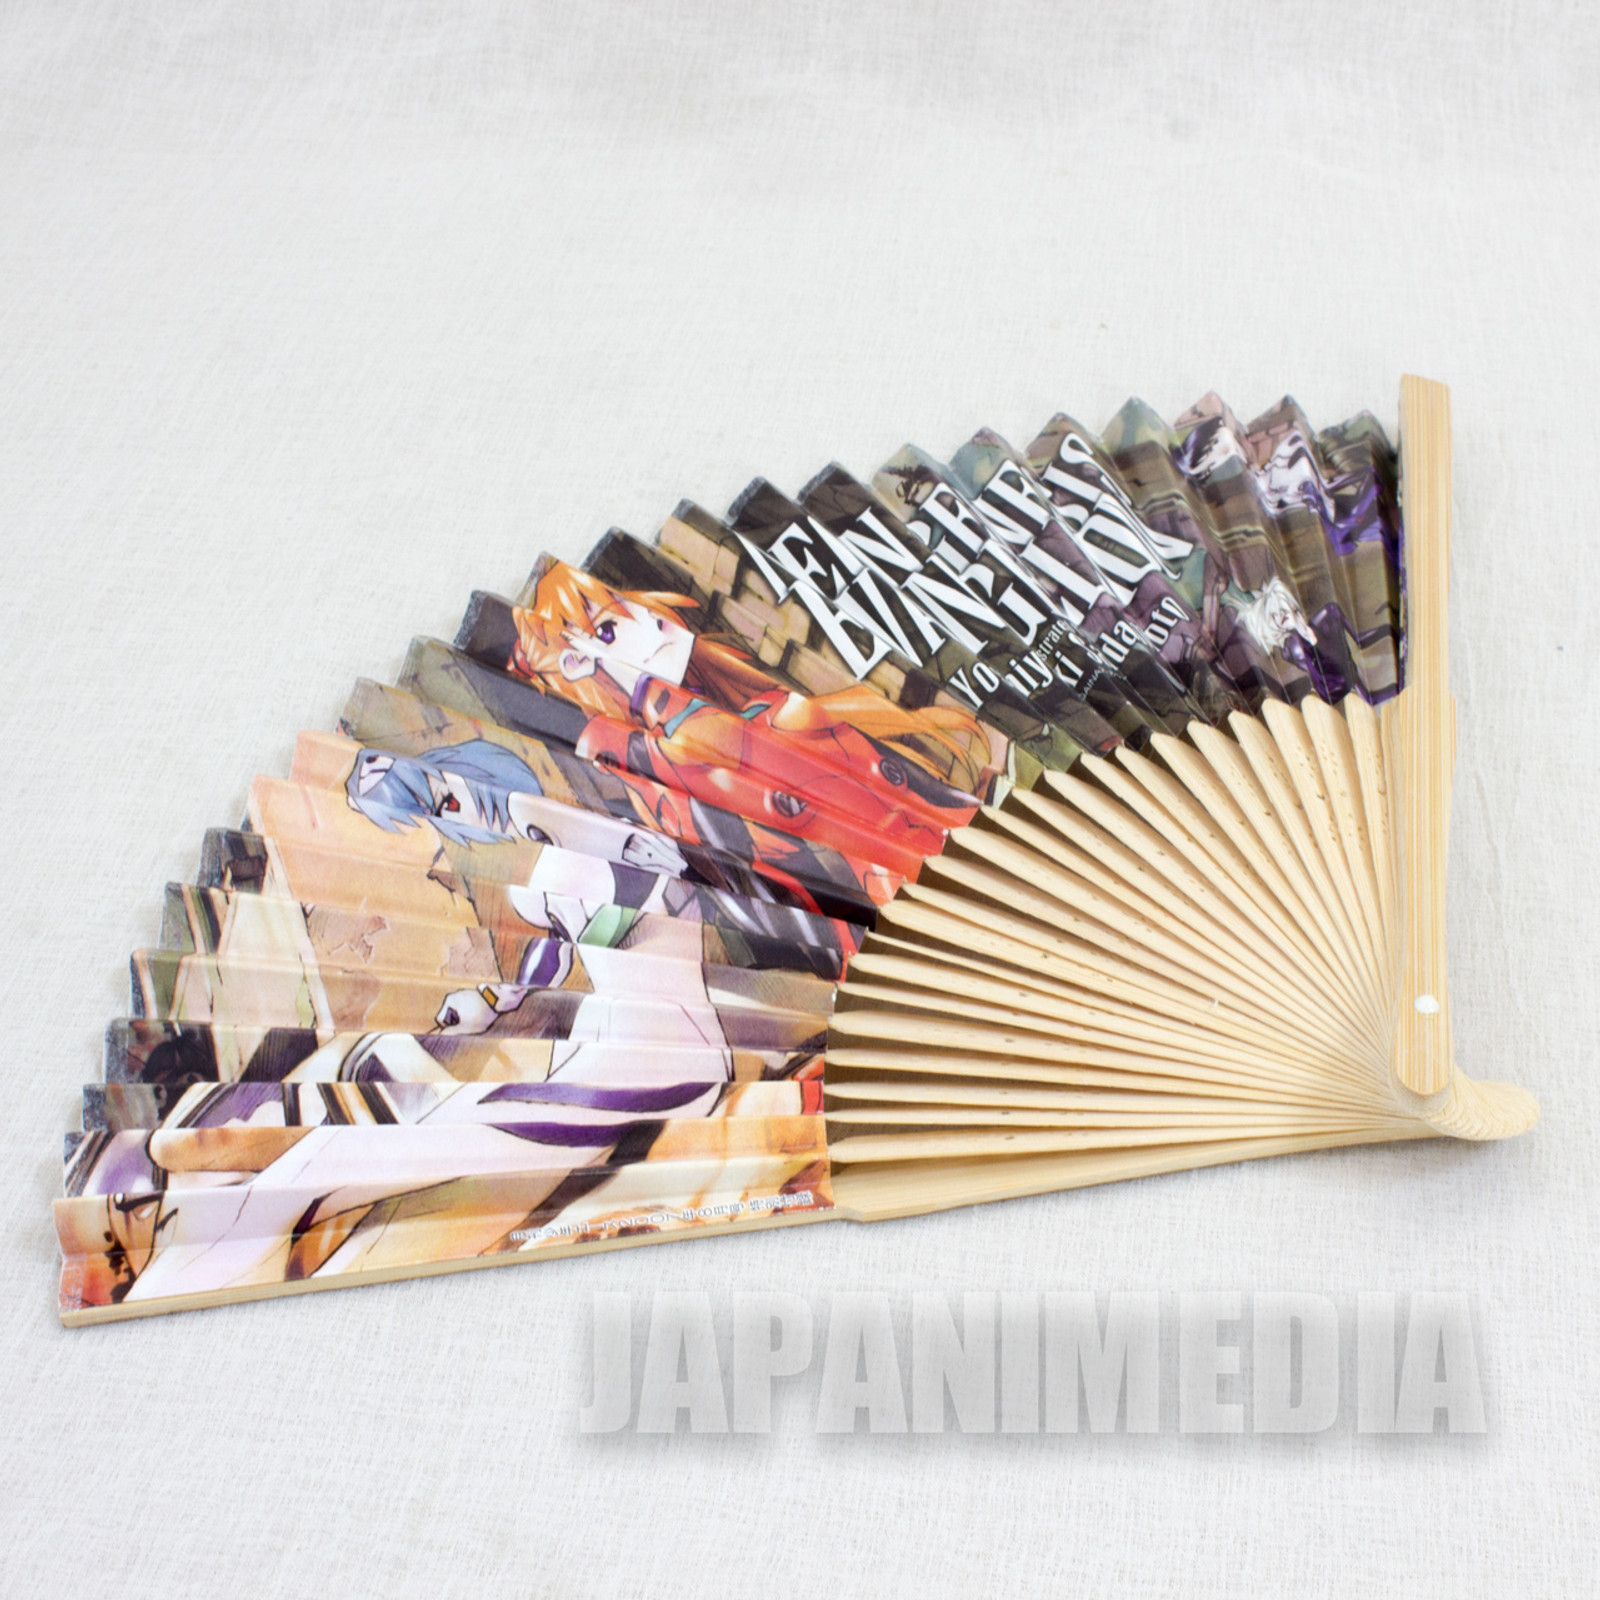 Evangelion Rei Ayanami Asuka Langley Folding Fan Japanese Sensu JAPAN ANIME 2